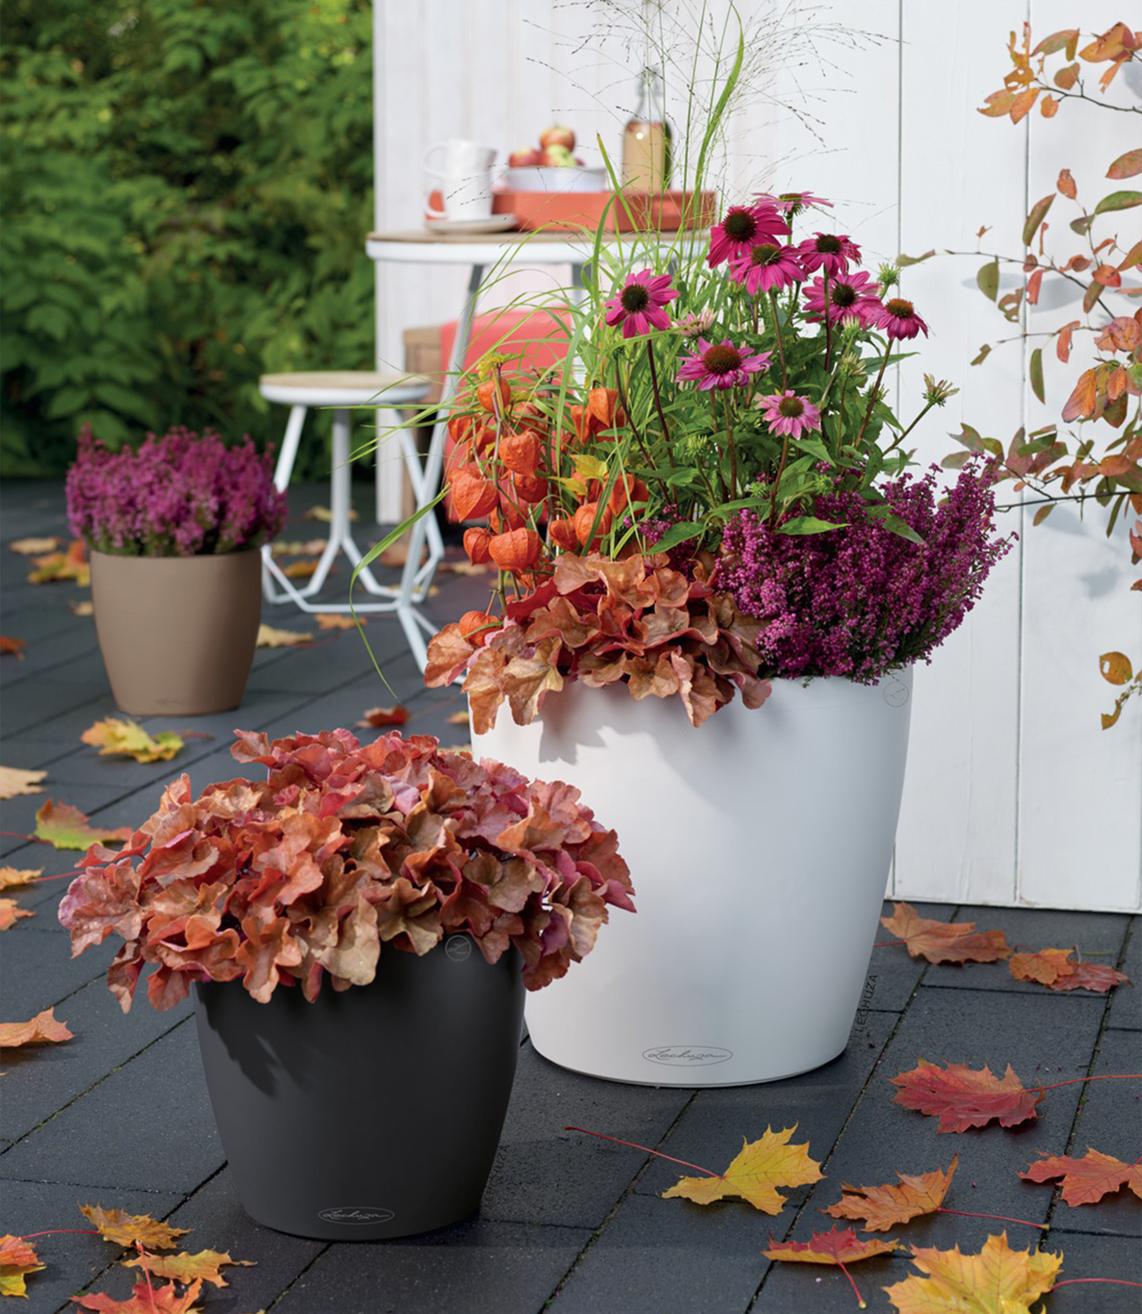 CLASSICO Color 35 und 43 mit Lampionblumen und Winterheide bepflanzt